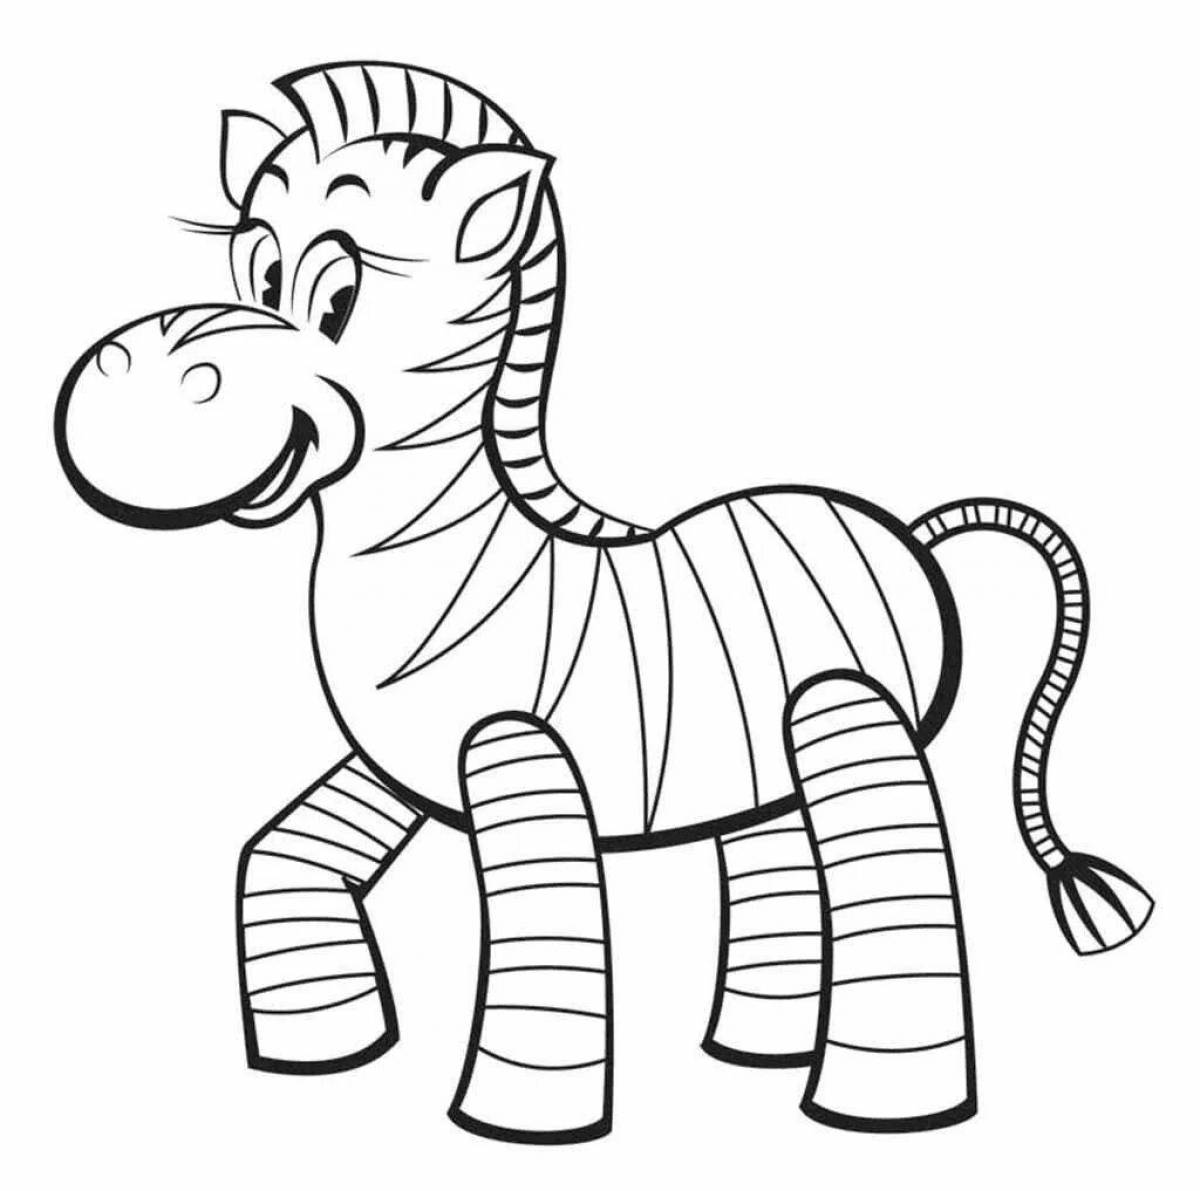 Zani zebra coloring book for kids